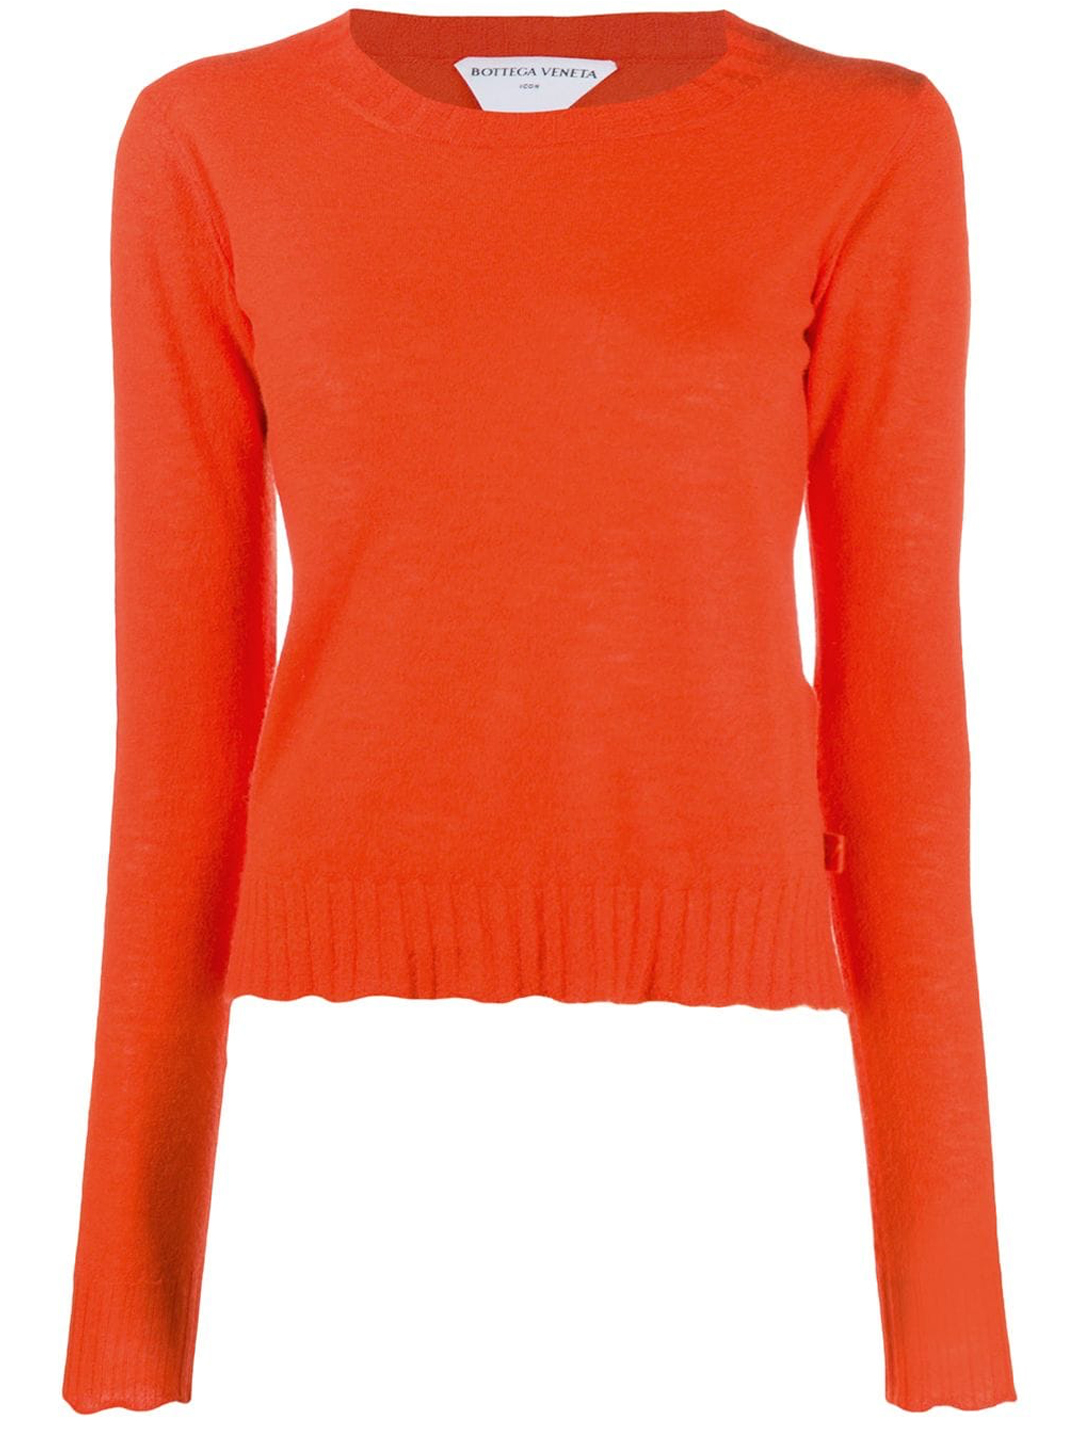 Свитер Bottega Veneta Orange Cashmere, оранжевый новинка 2021 кашемировый свитер женский свитер модный пуловер свитер с вышивкой x осенне зимний кашемировый свитер